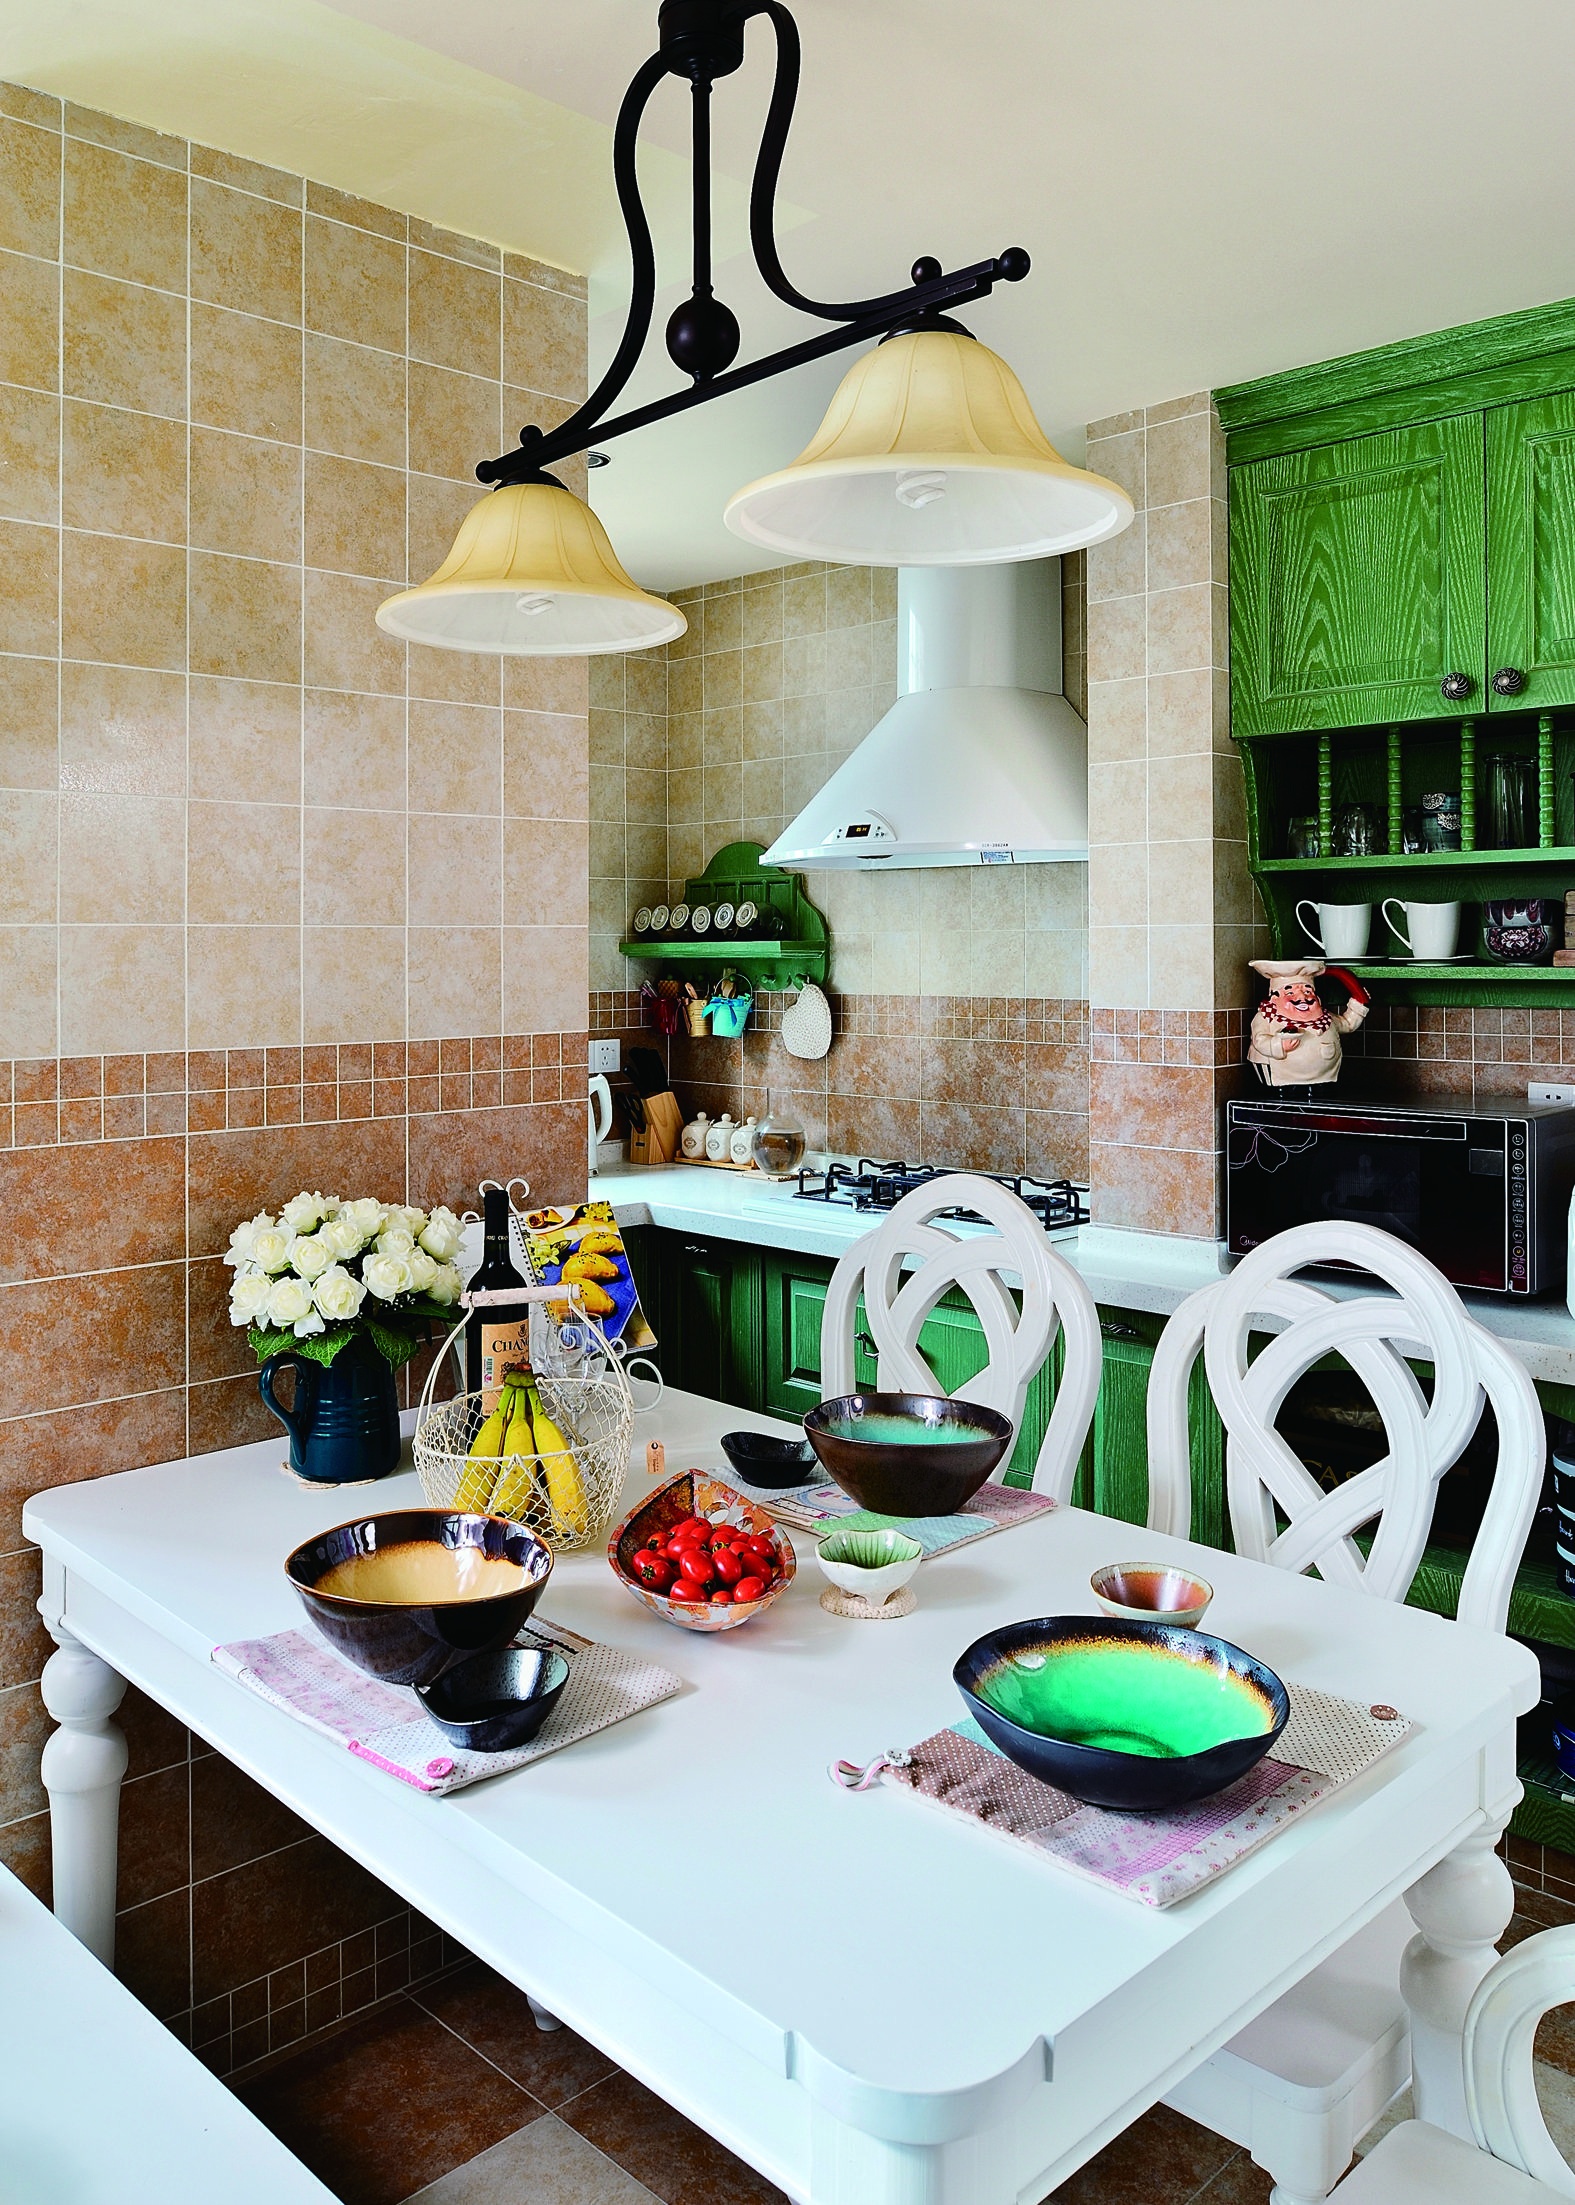 清新 三室 自然 朴实 超脱 静蜜 沪上名家 厨房图片来自沪上名家装饰在锦绣天地的清新风格的分享